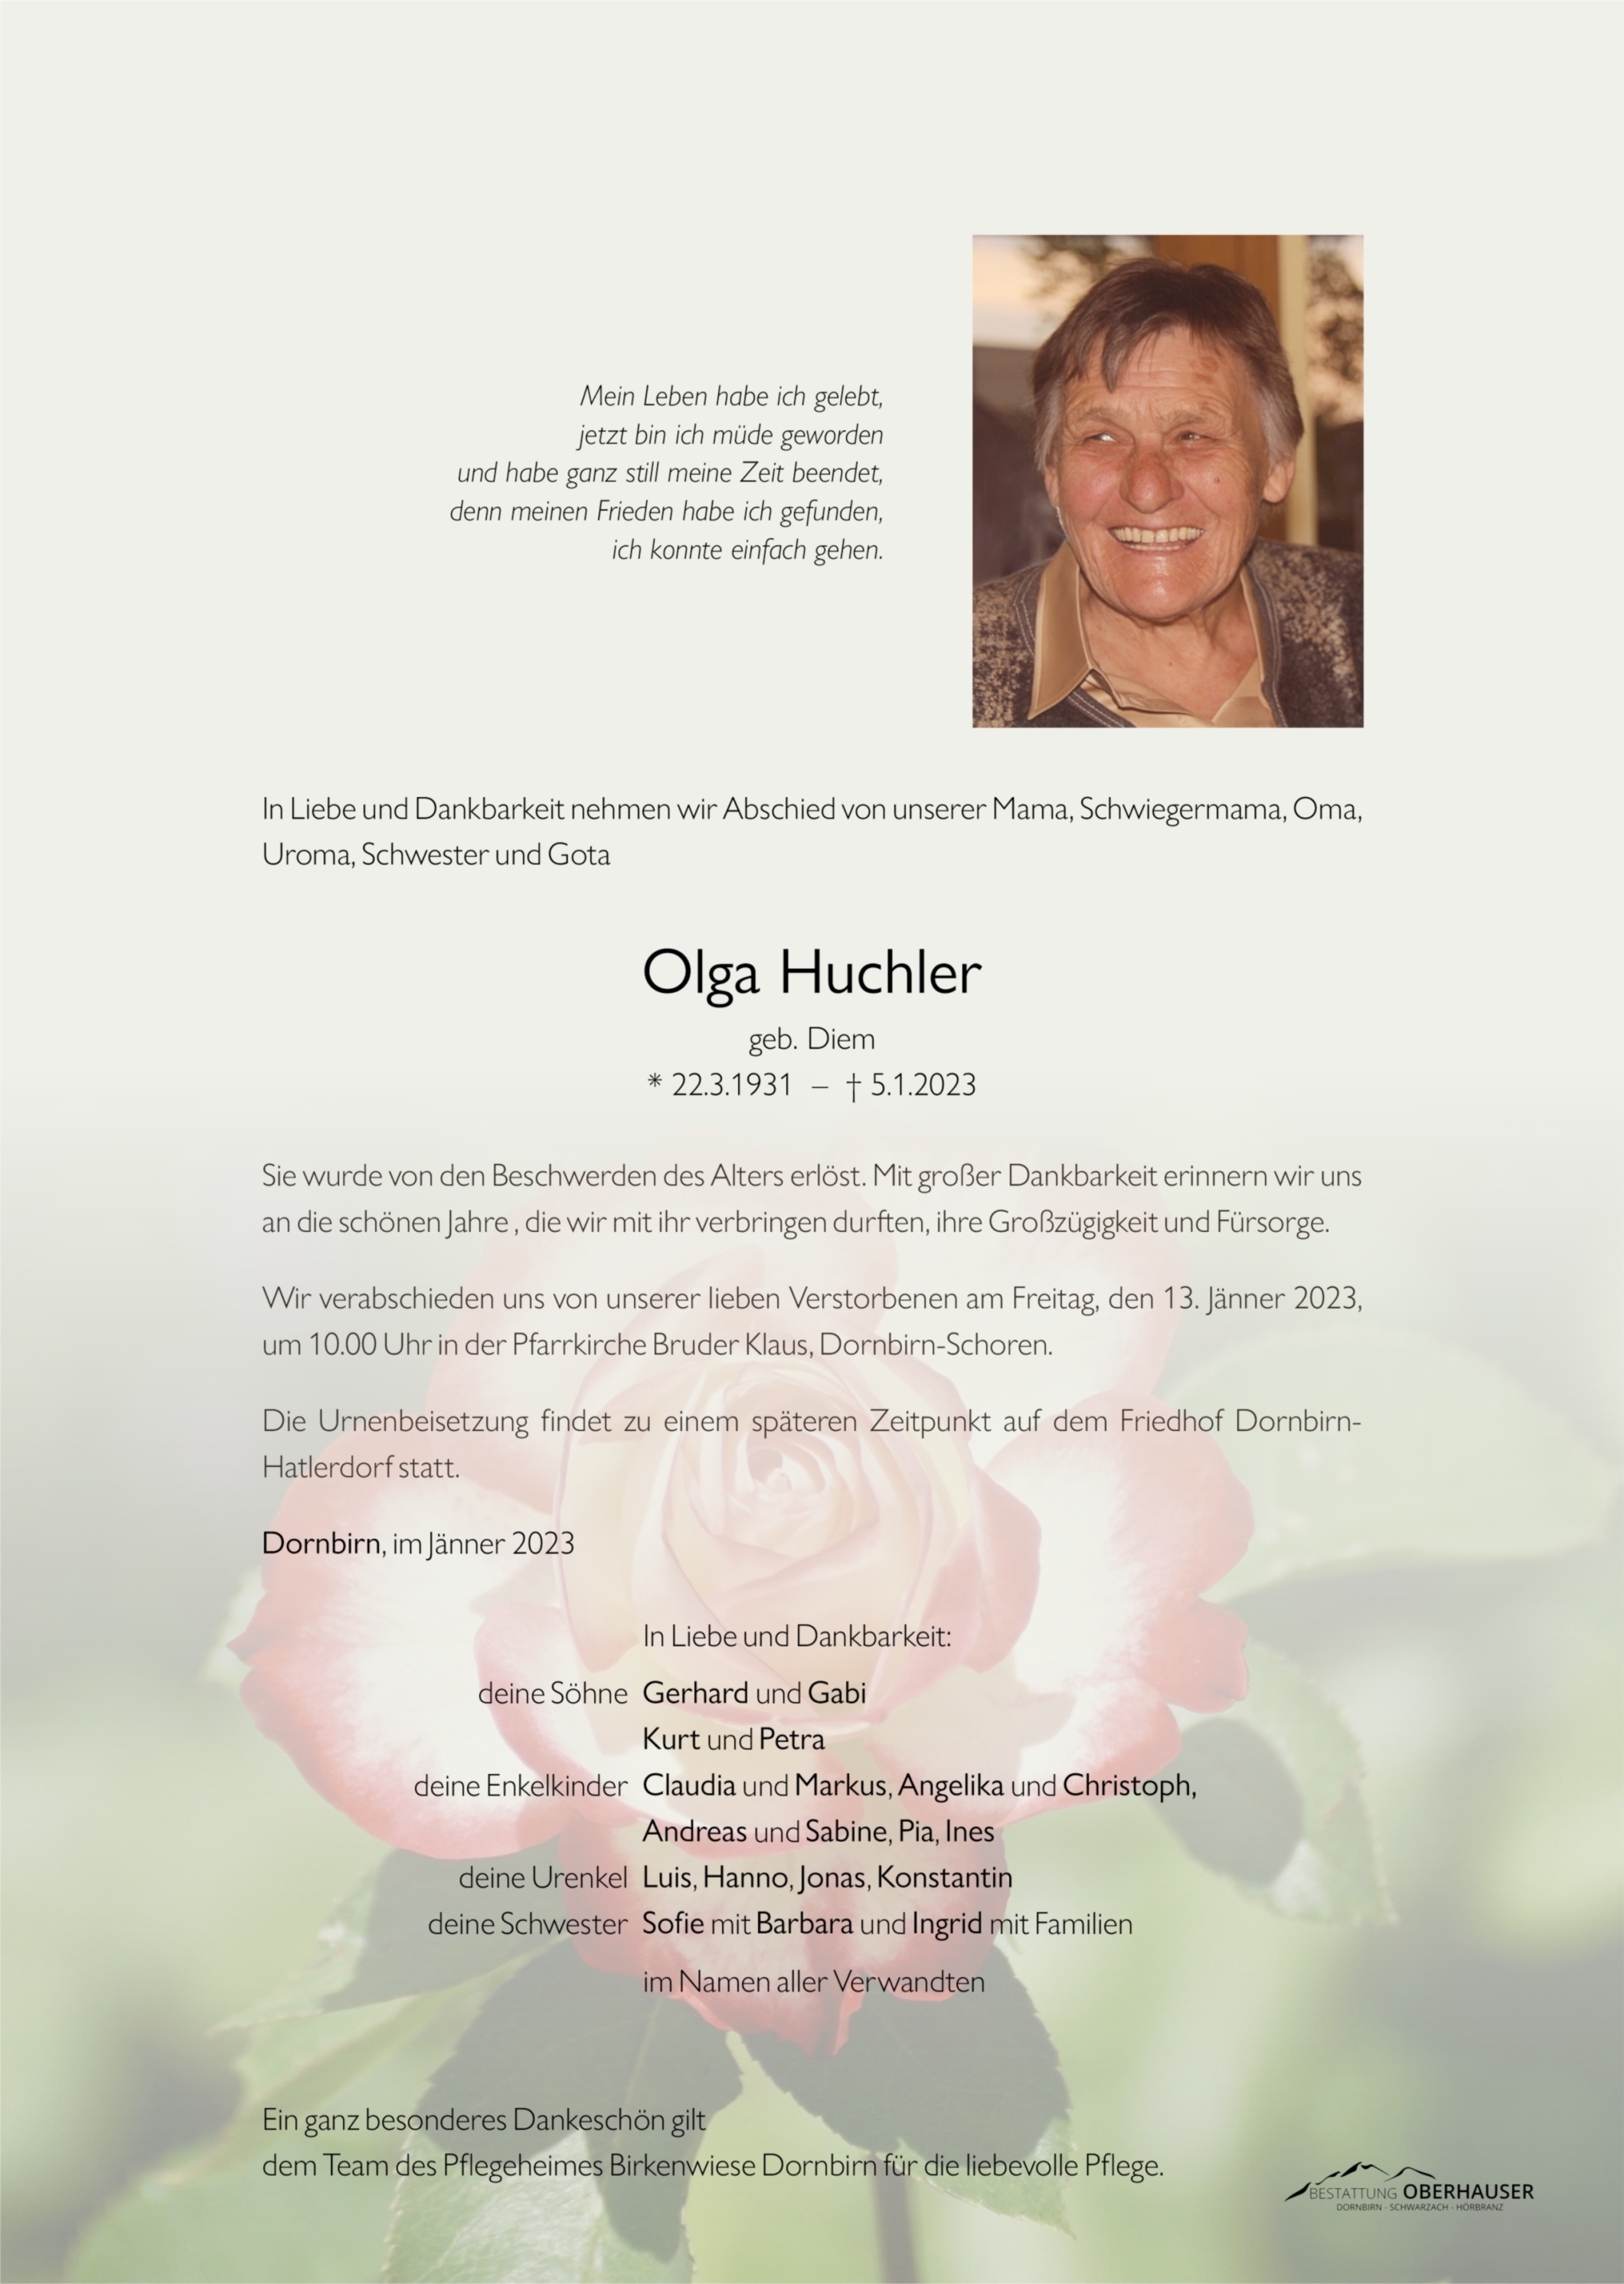 Olga  Huchler